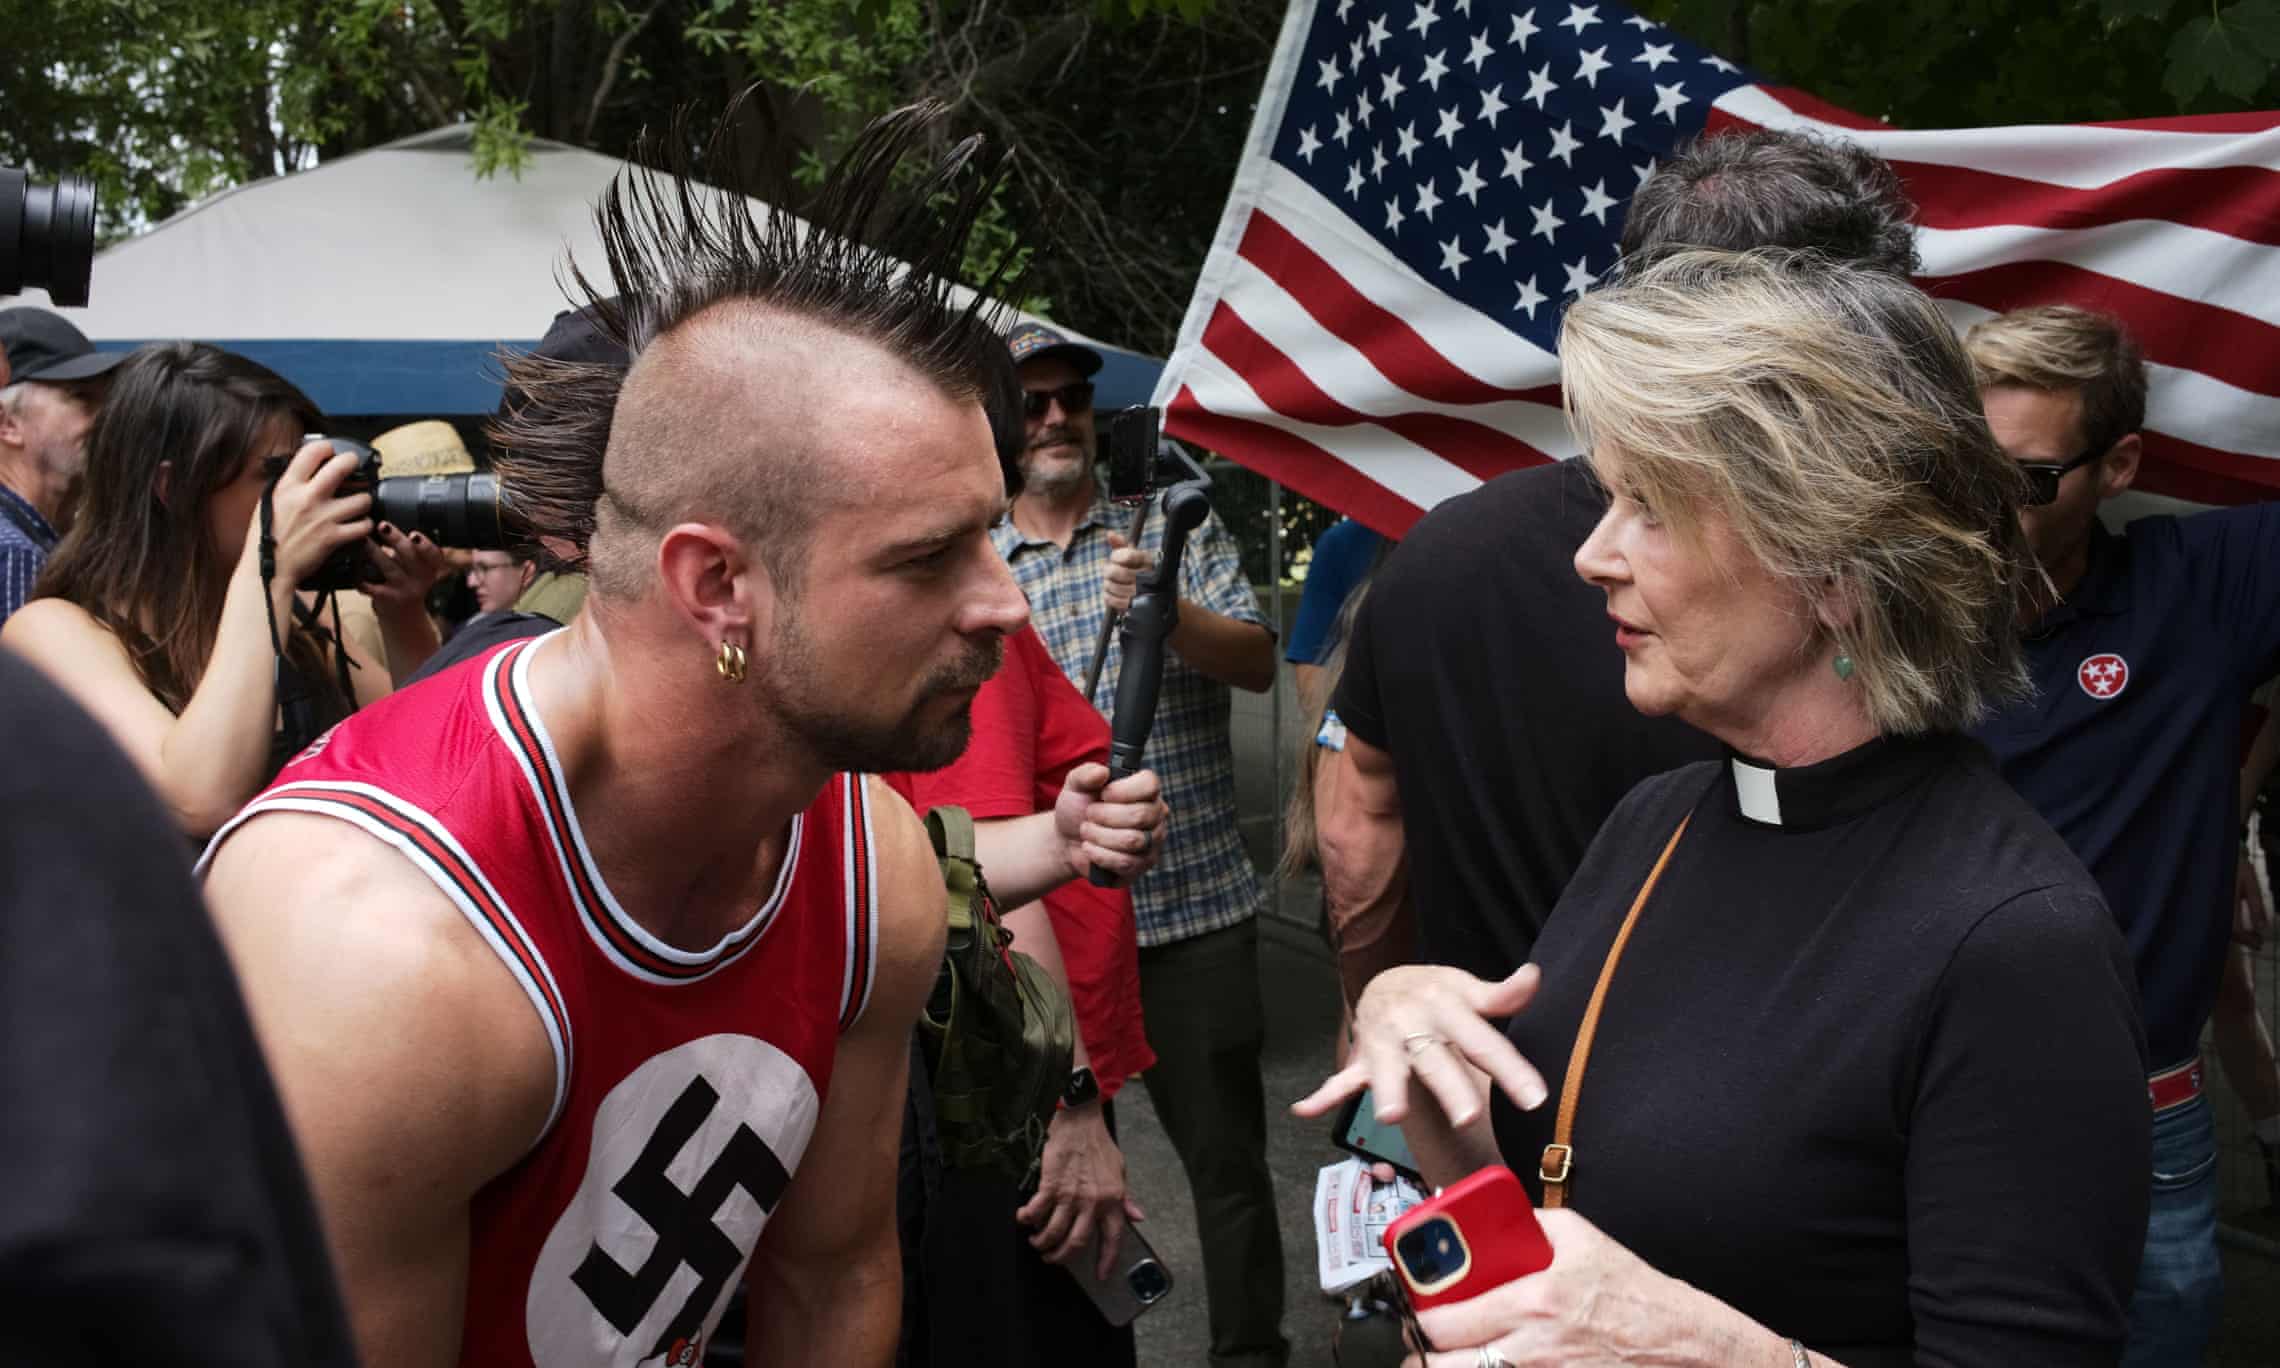  Nashville inundated with Nazi groups